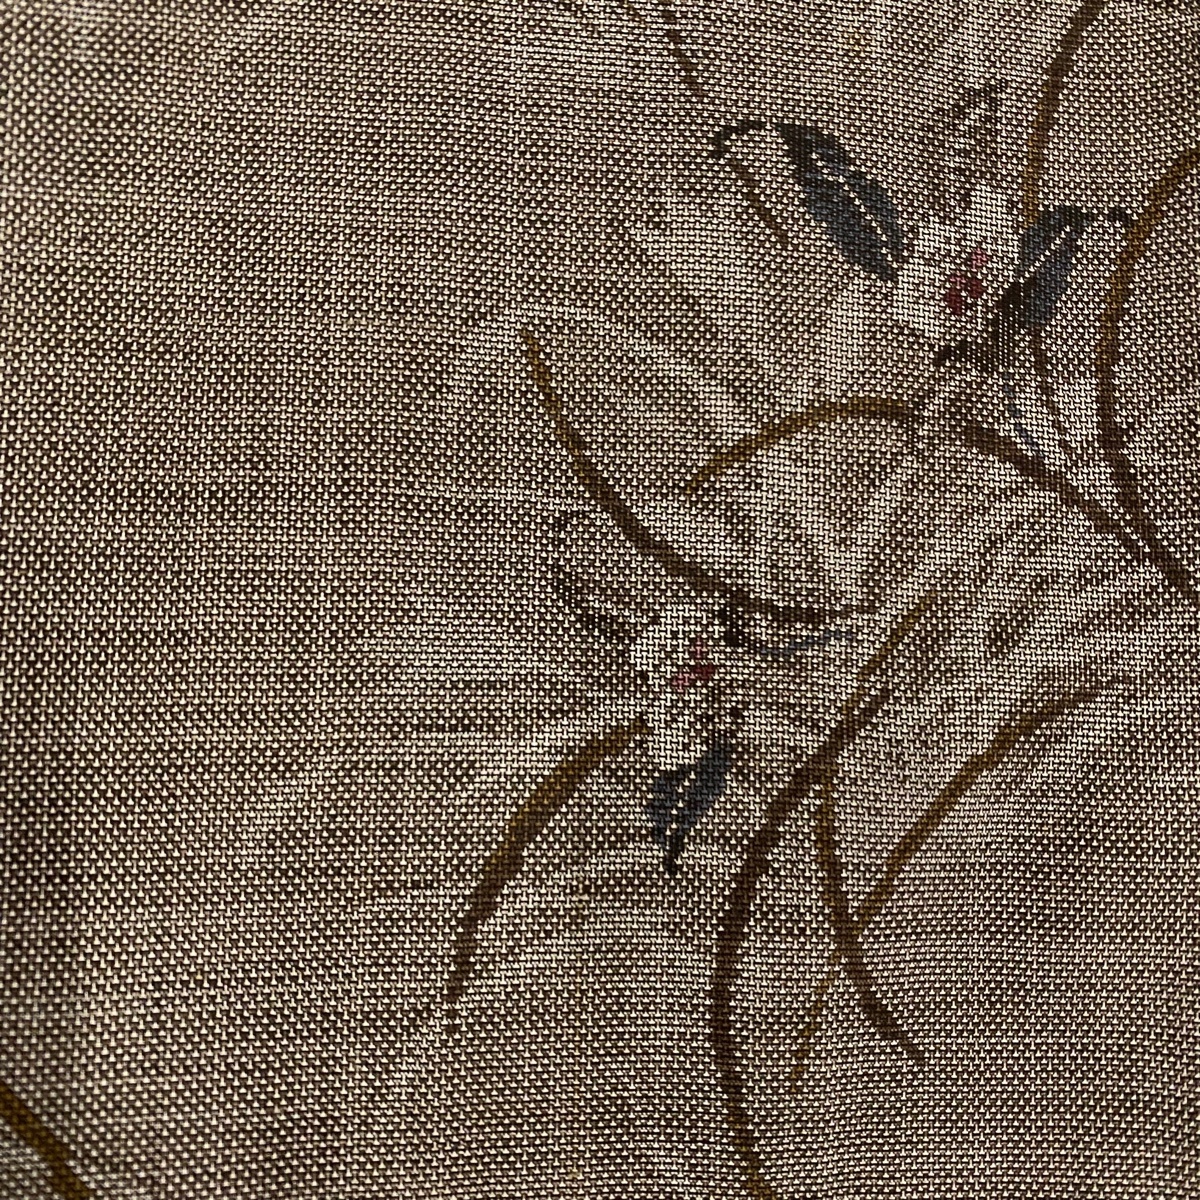  Ooshima эпонж длина 153cm длина рукава 63cm S. оригинальный грязь . доказательство бумага . цветок подпалина чай цвет натуральный шелк название товар [ б/у ]